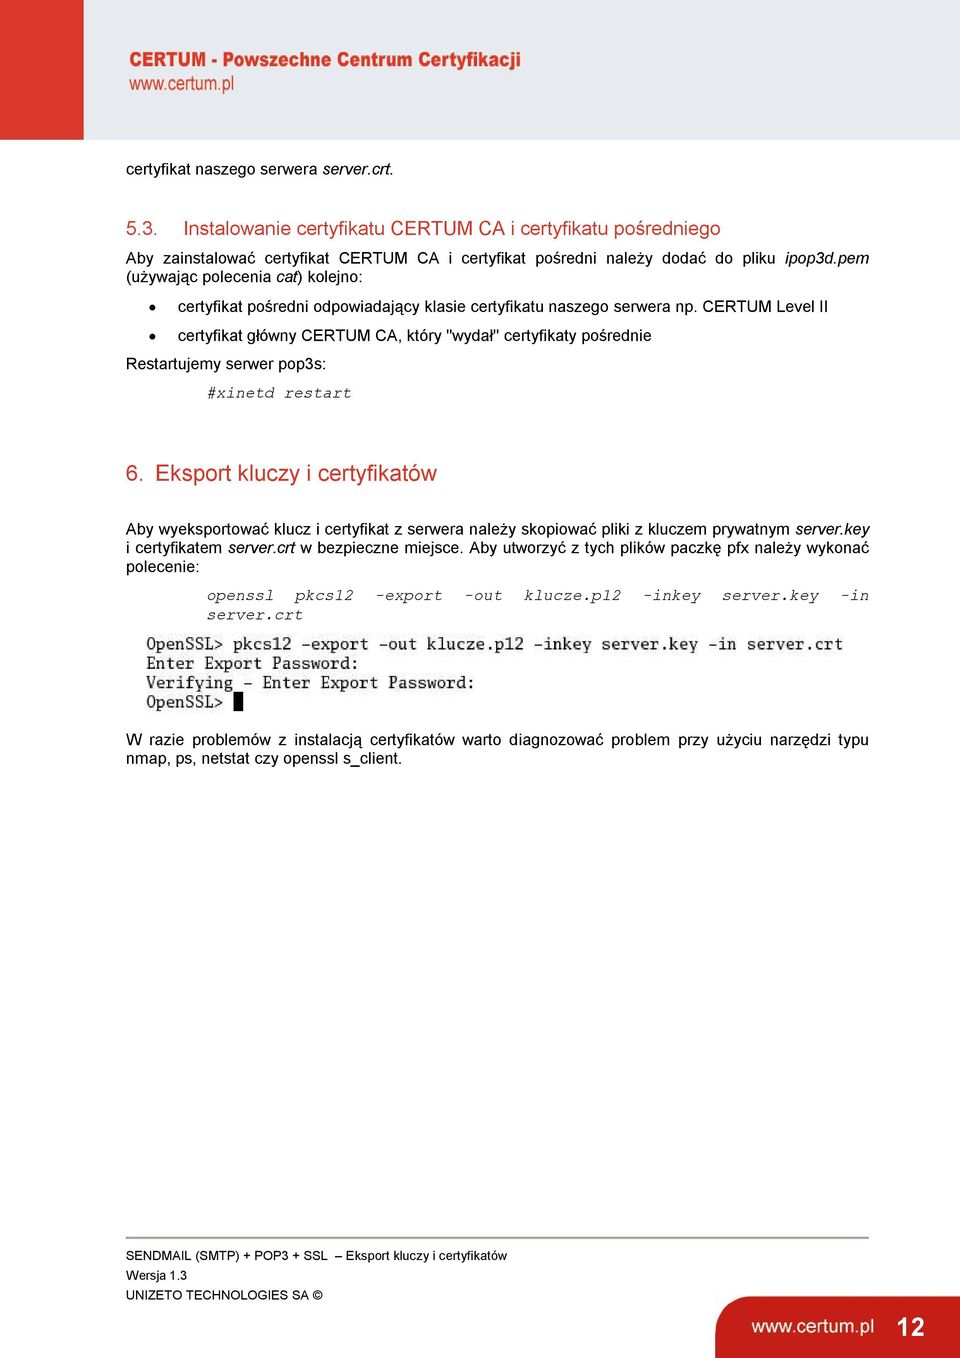 CERTUM Level II certyfikat główny CERTUM CA, który ''wydał'' certyfikaty pośrednie Restartujemy serwer pop3s: #xinetd restart 6.